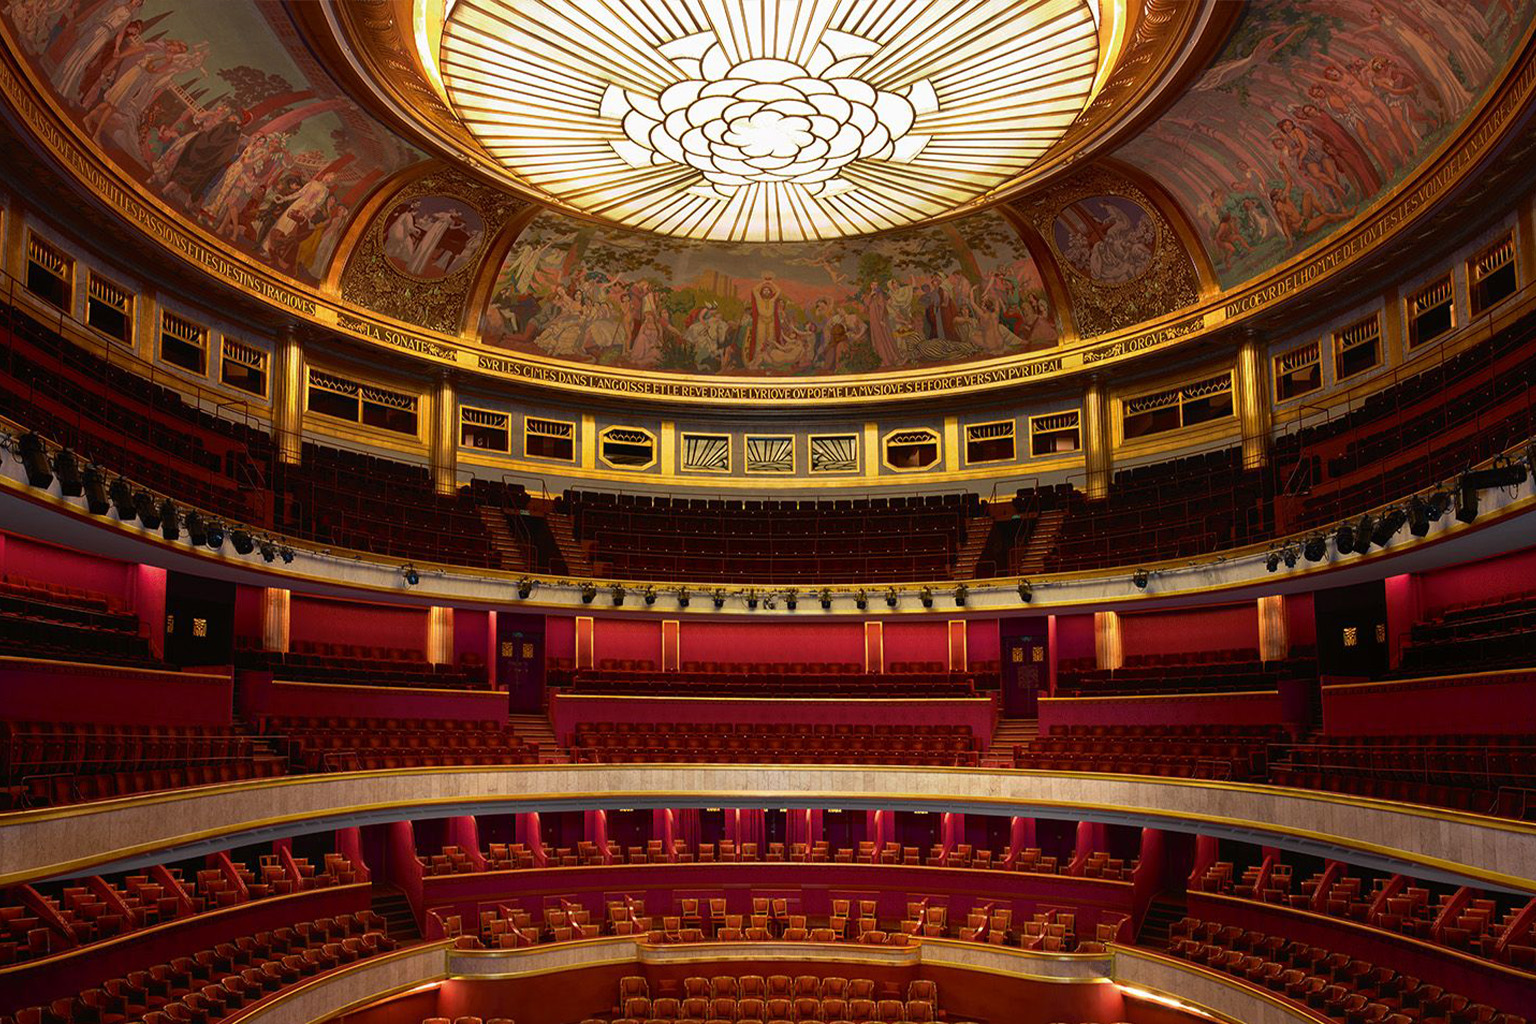 Théâtre des Champs-Elysées chamber music concert